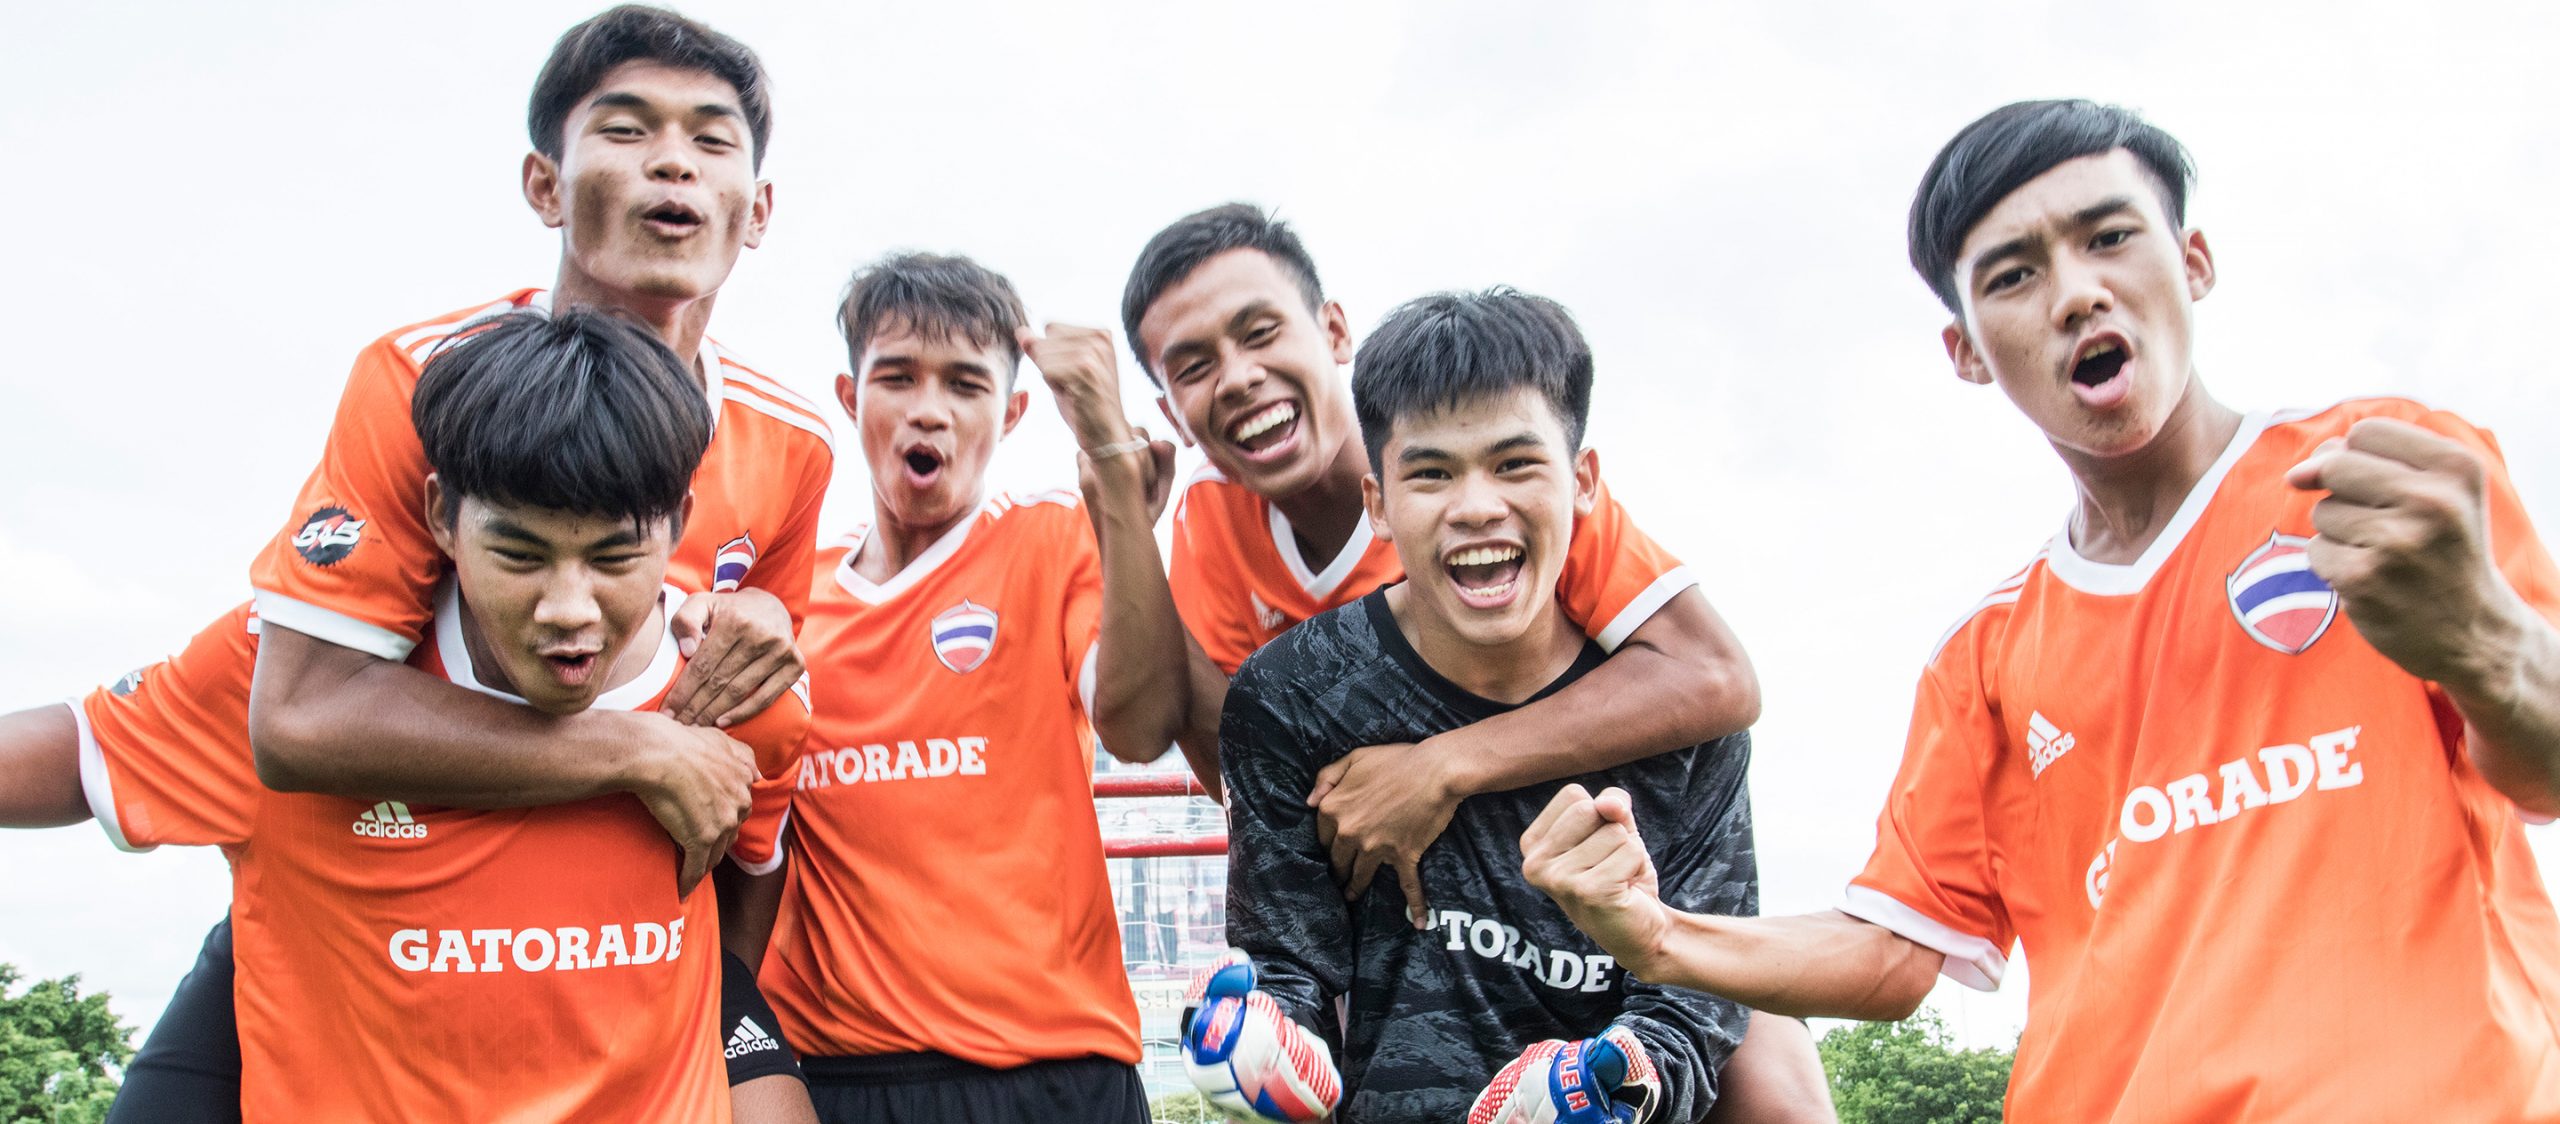 บลูอาร์มี่ : ทีมฟุตบอลเยาวชนไทยที่ตกเครื่องก่อนไปคว้ารองแชมป์โลกที่มาดริด